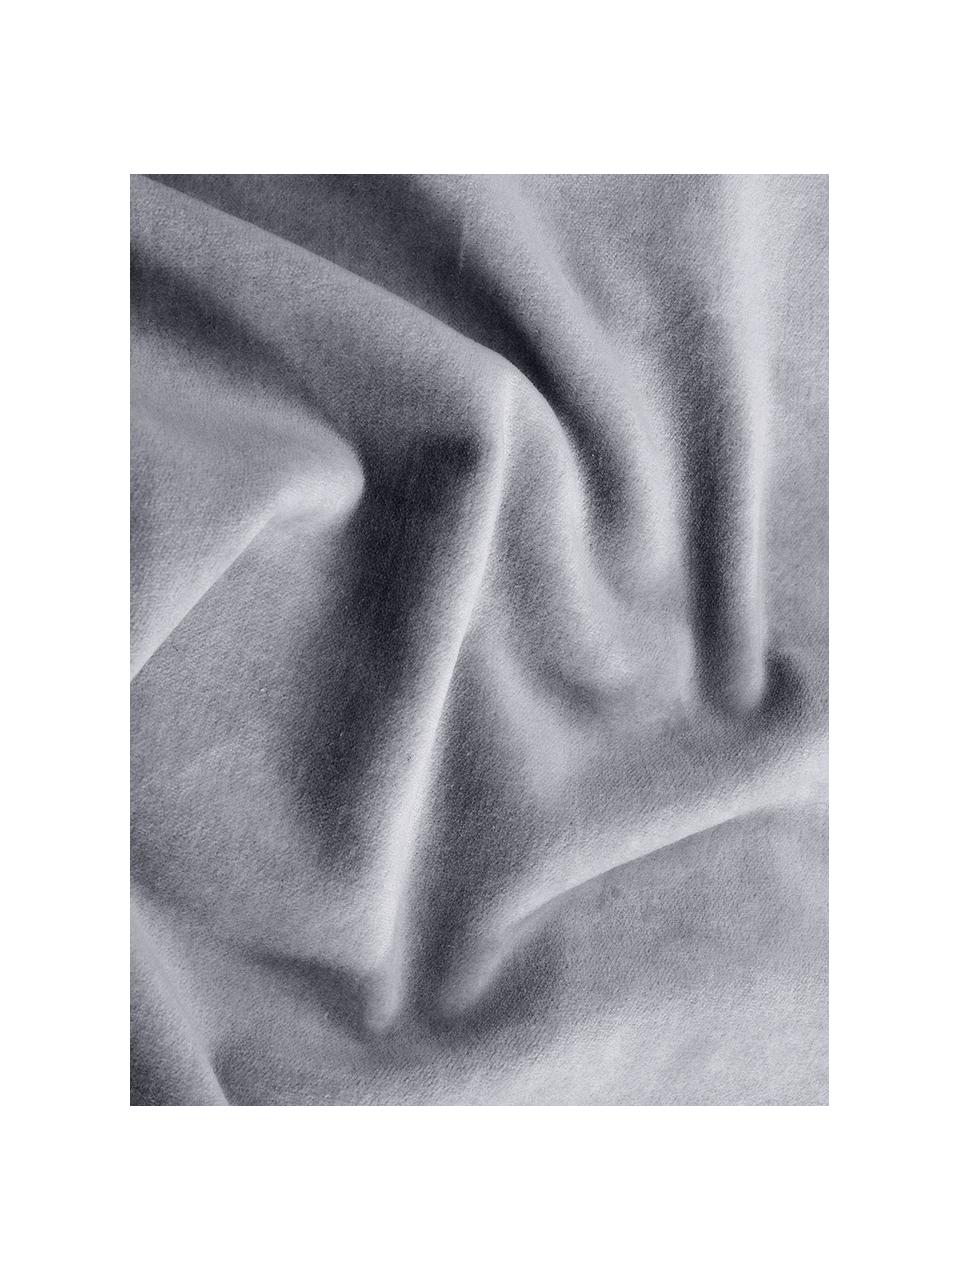 Effen fluwelen kussenhoes Dana in grijs, 100% katoenfluweel, Grijs, B 40 x L 40 cm